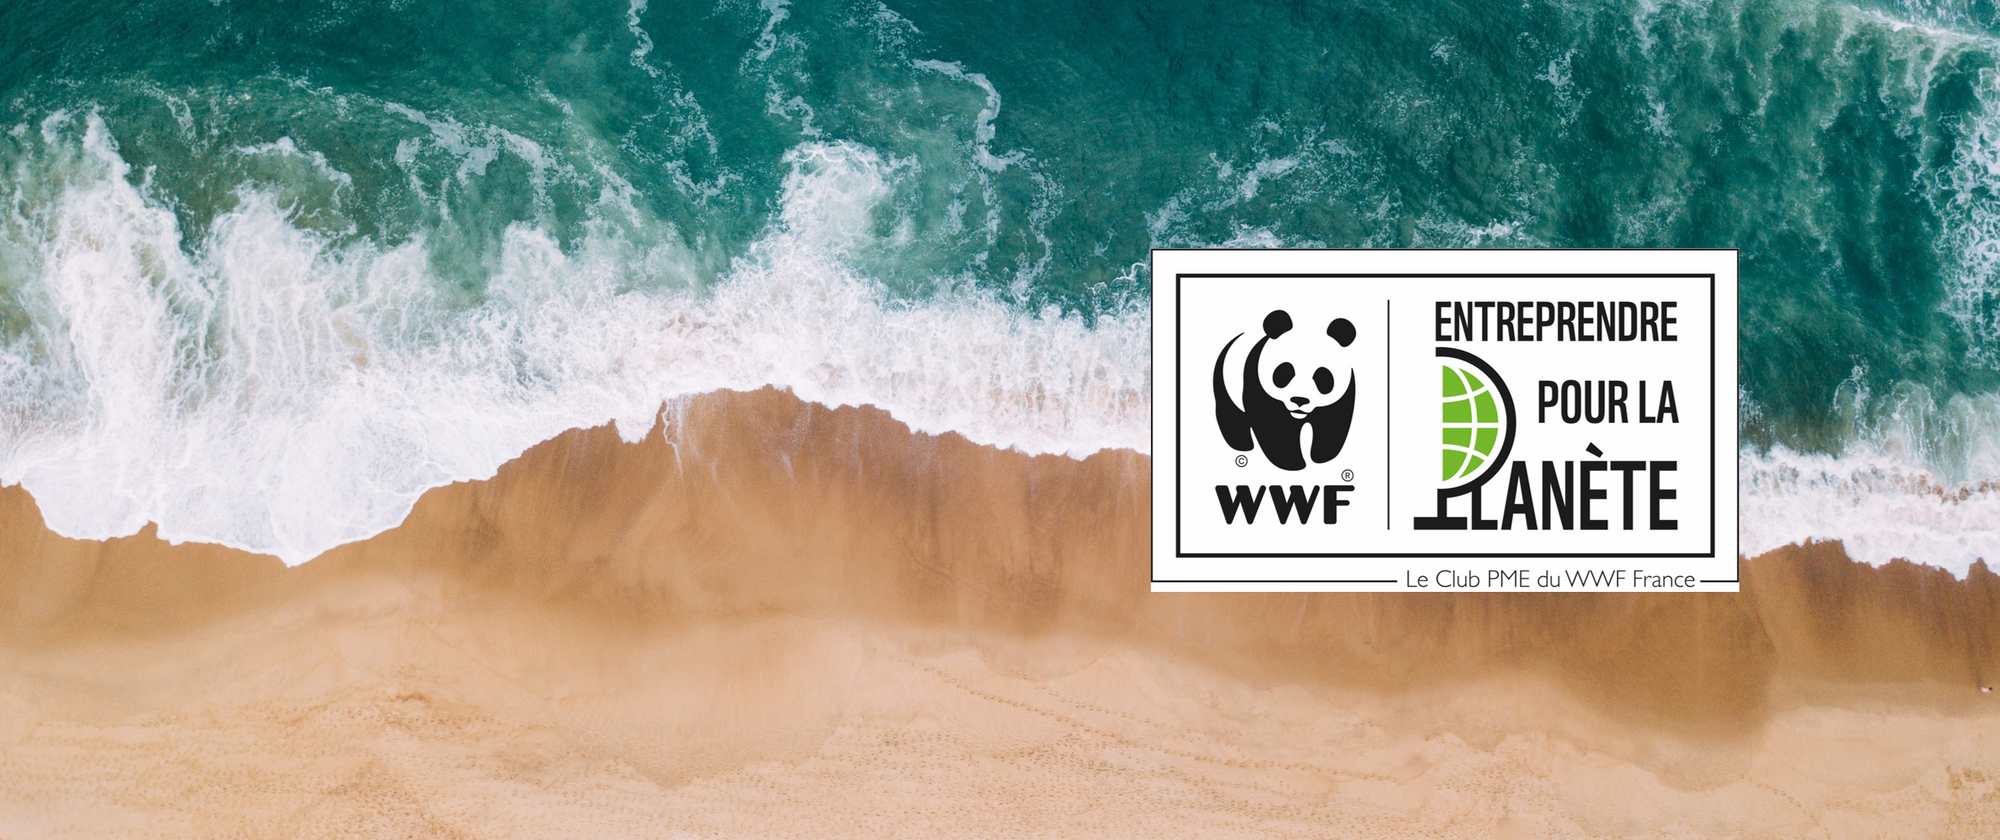 Les Petits Bidons engagés pour la planète, l'environnement et la biodiversité en devenant membre du Club Entreprendre pour la Planète WWF France ! Découvrez enfin une lessive naturelle engagée et vraiment propre pour vous et l'environnement.